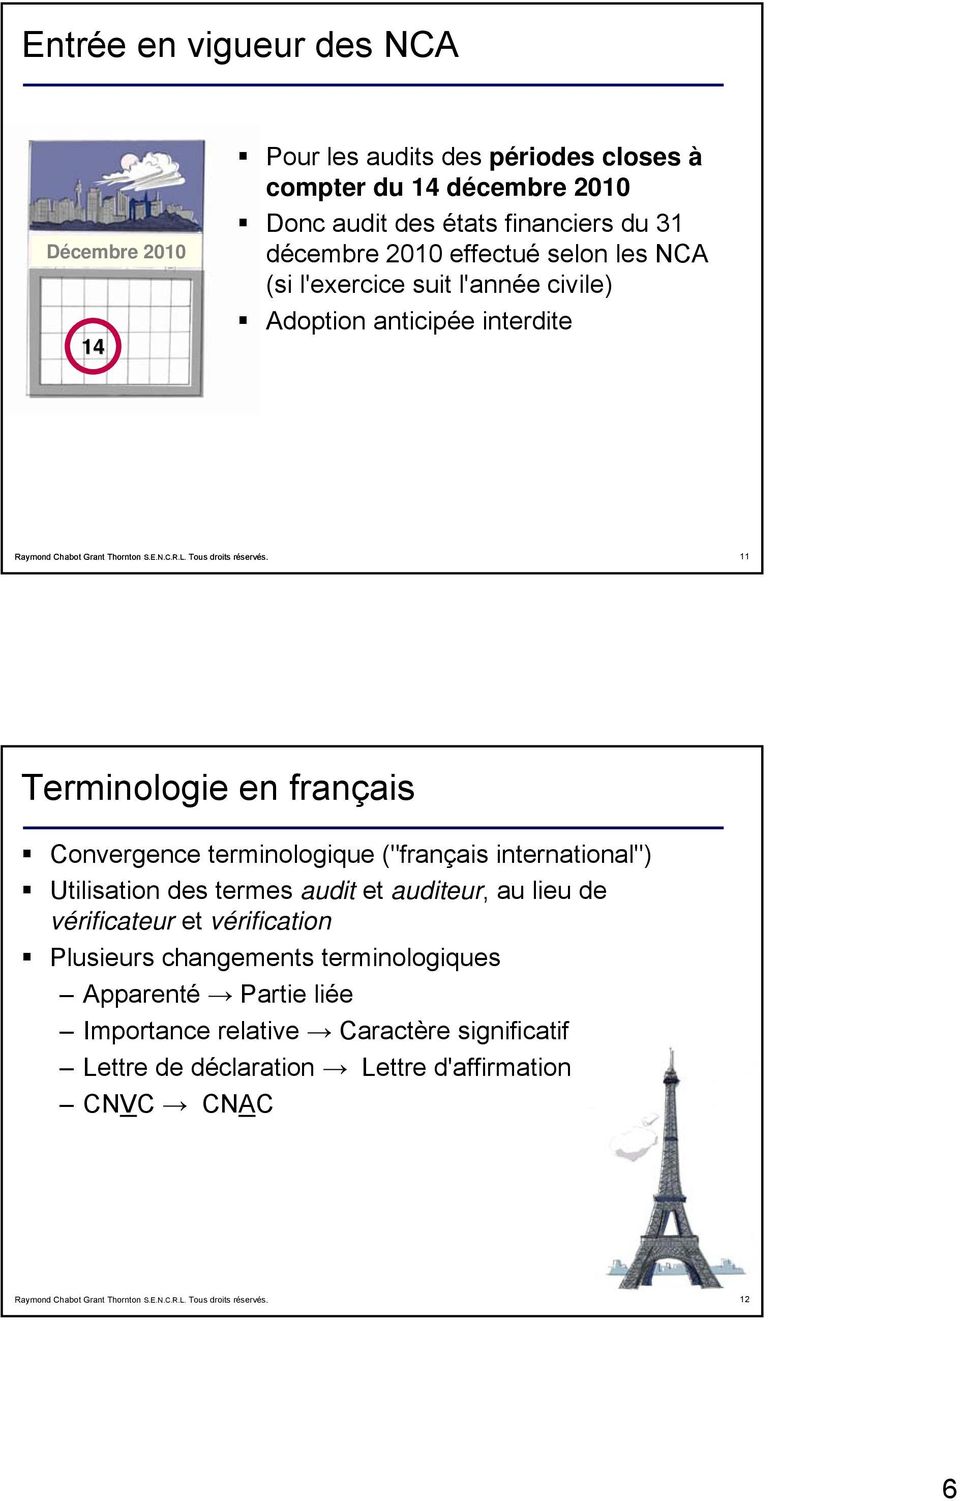 Convergence terminologique ("français international") Utilisation des termes audit et auditeur, au lieu de vérificateur et vérification